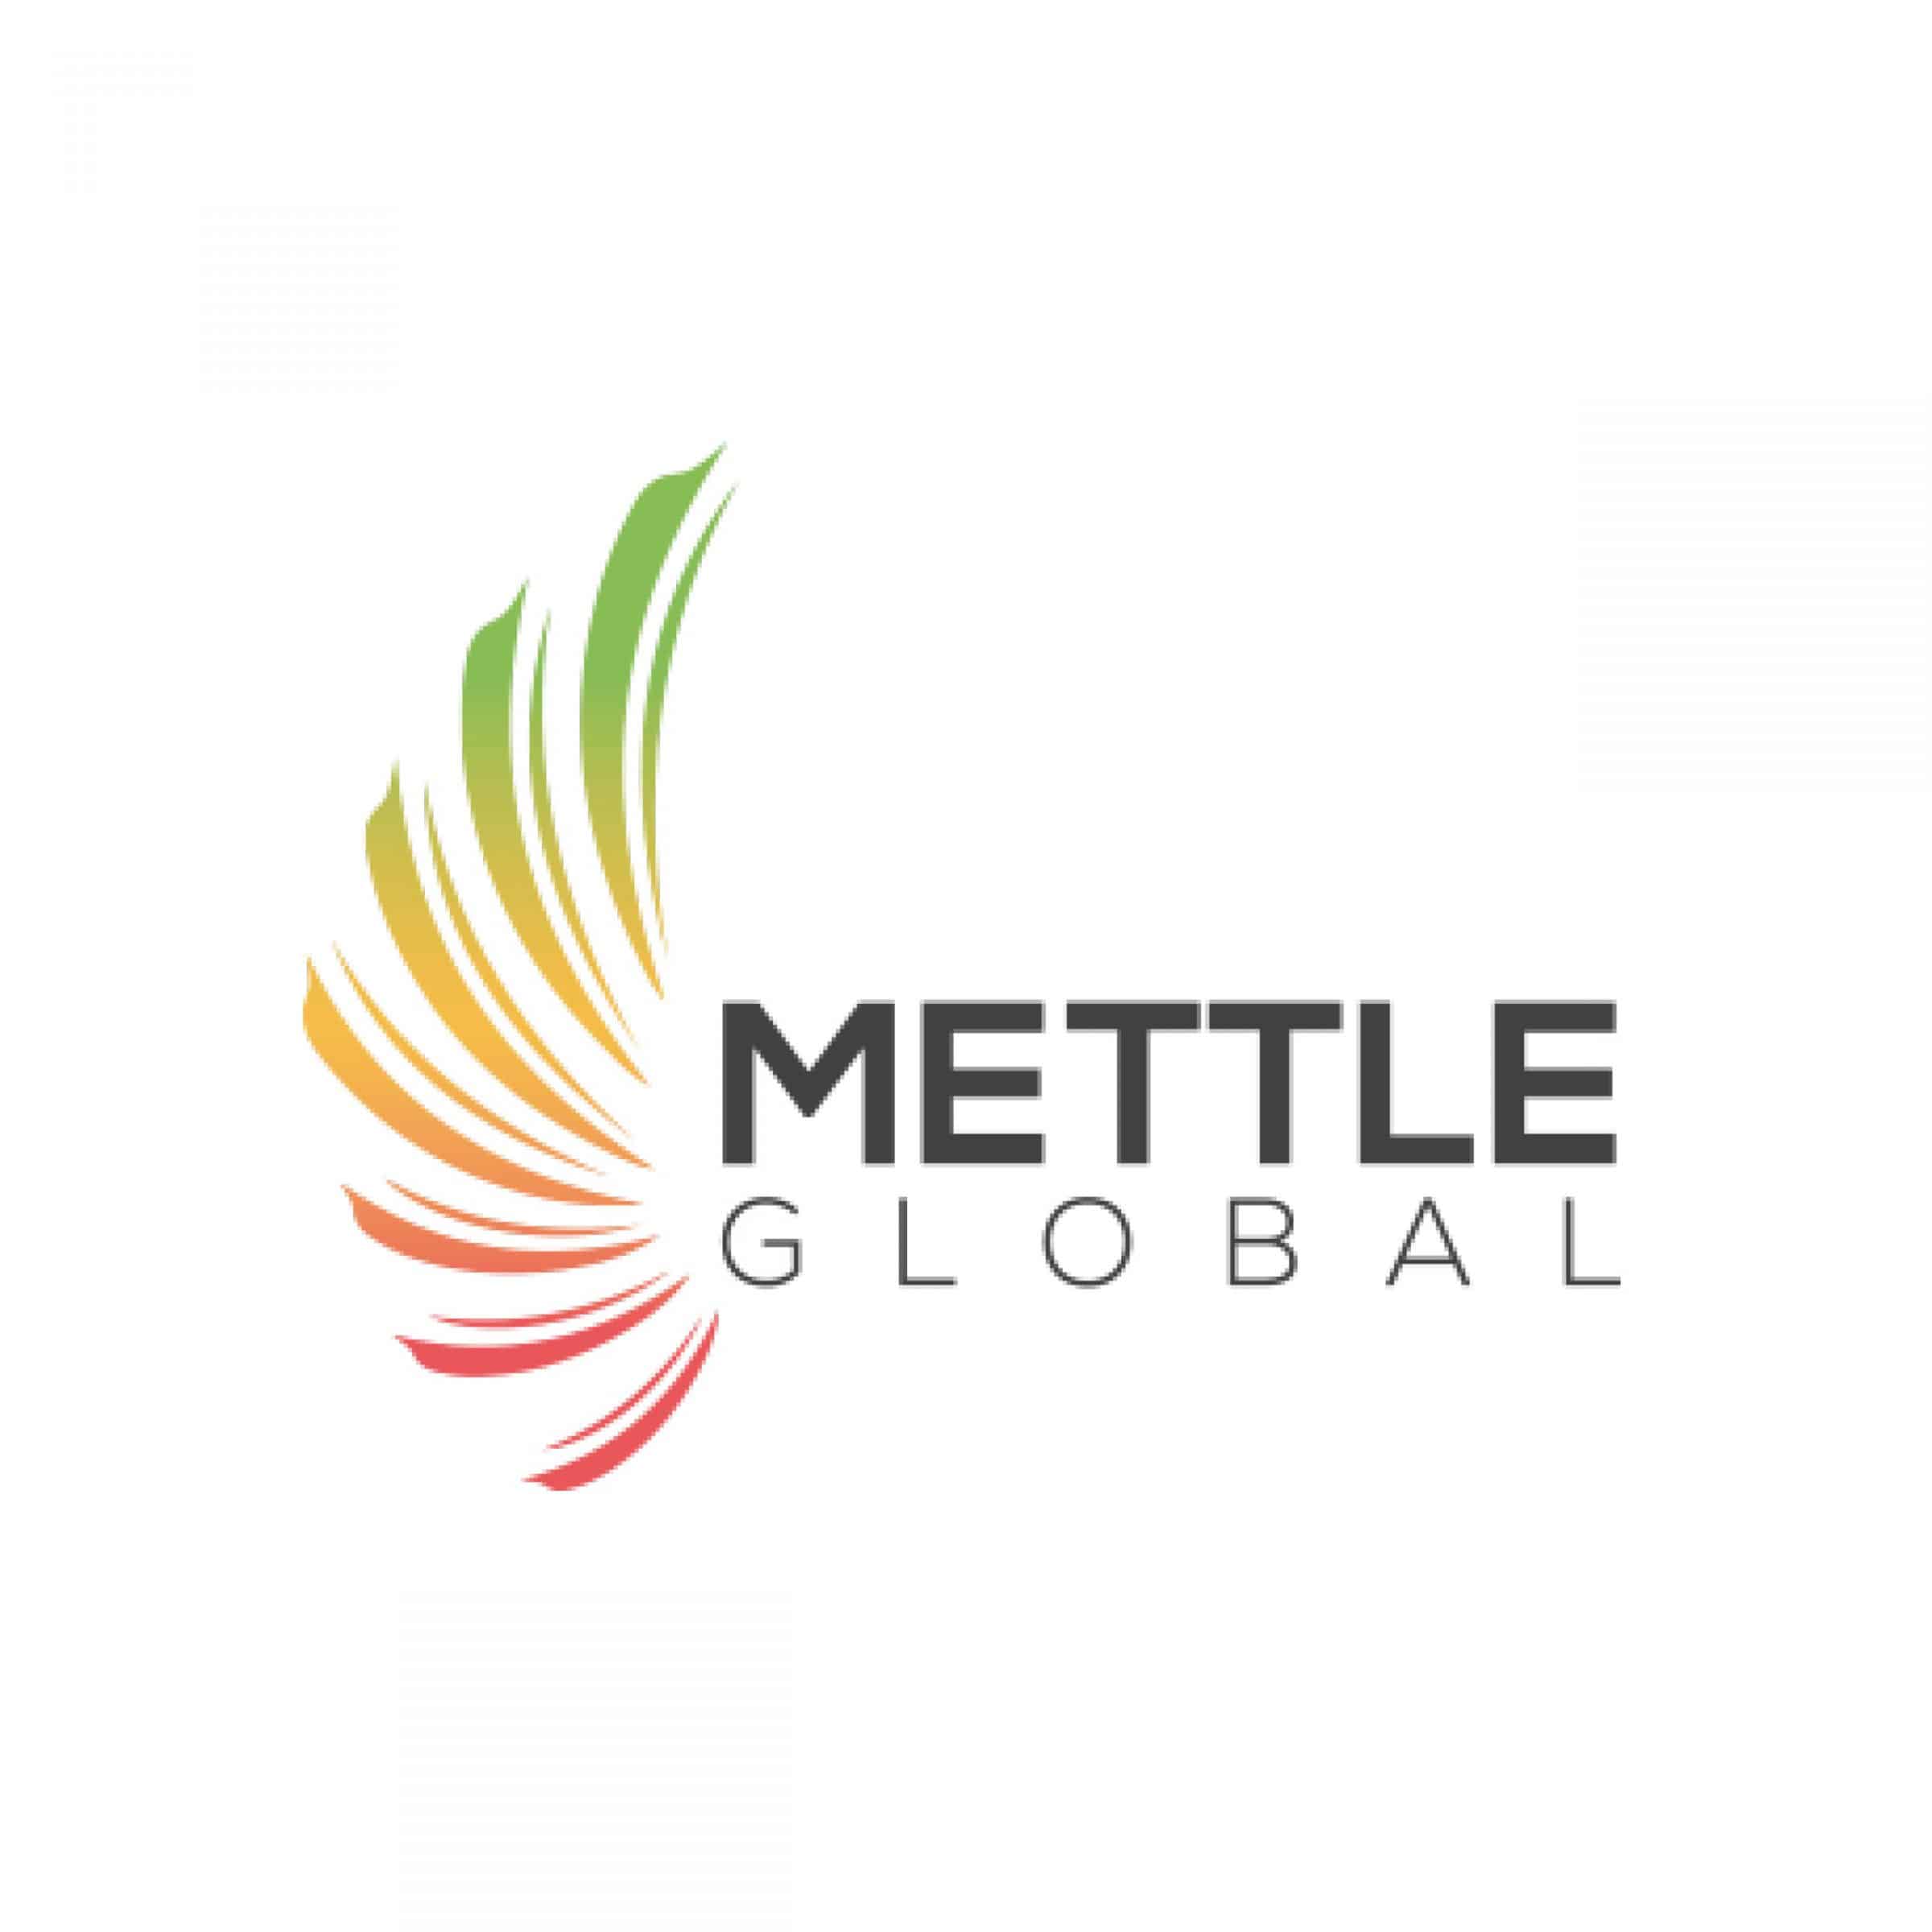 mettle global logo